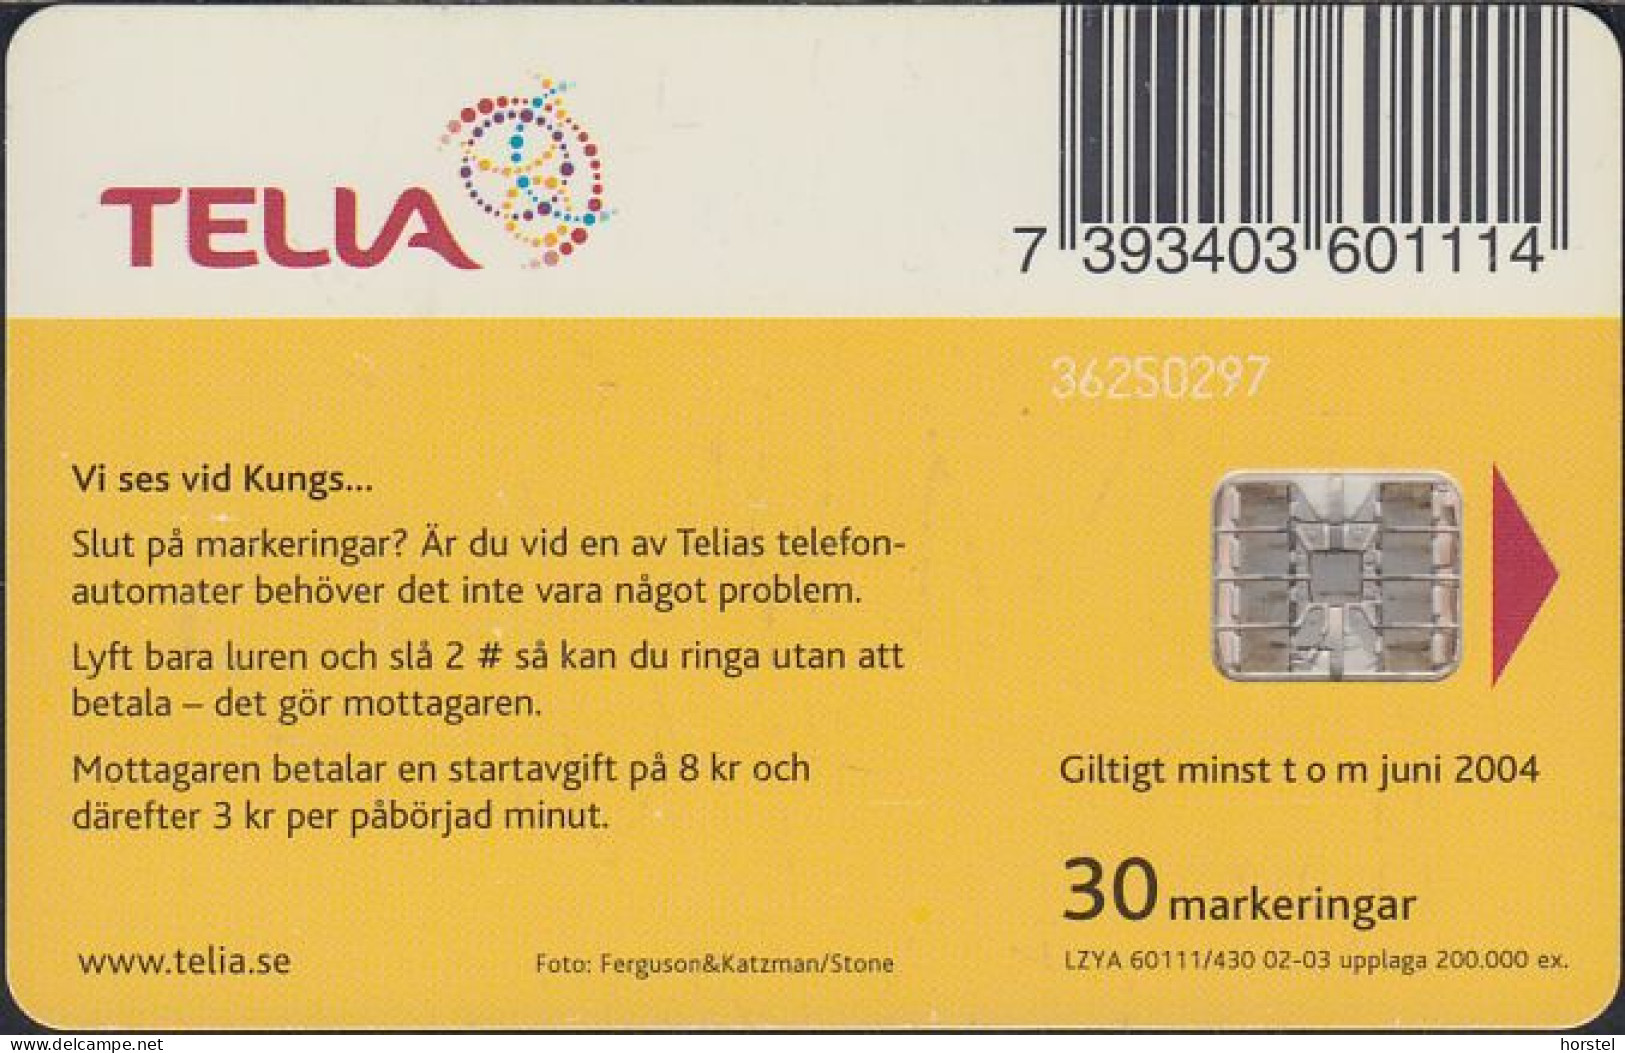 Schweden Chip 353 Diving Girl - Tauchen (60111/430) - Stamped 36250297 - Svezia